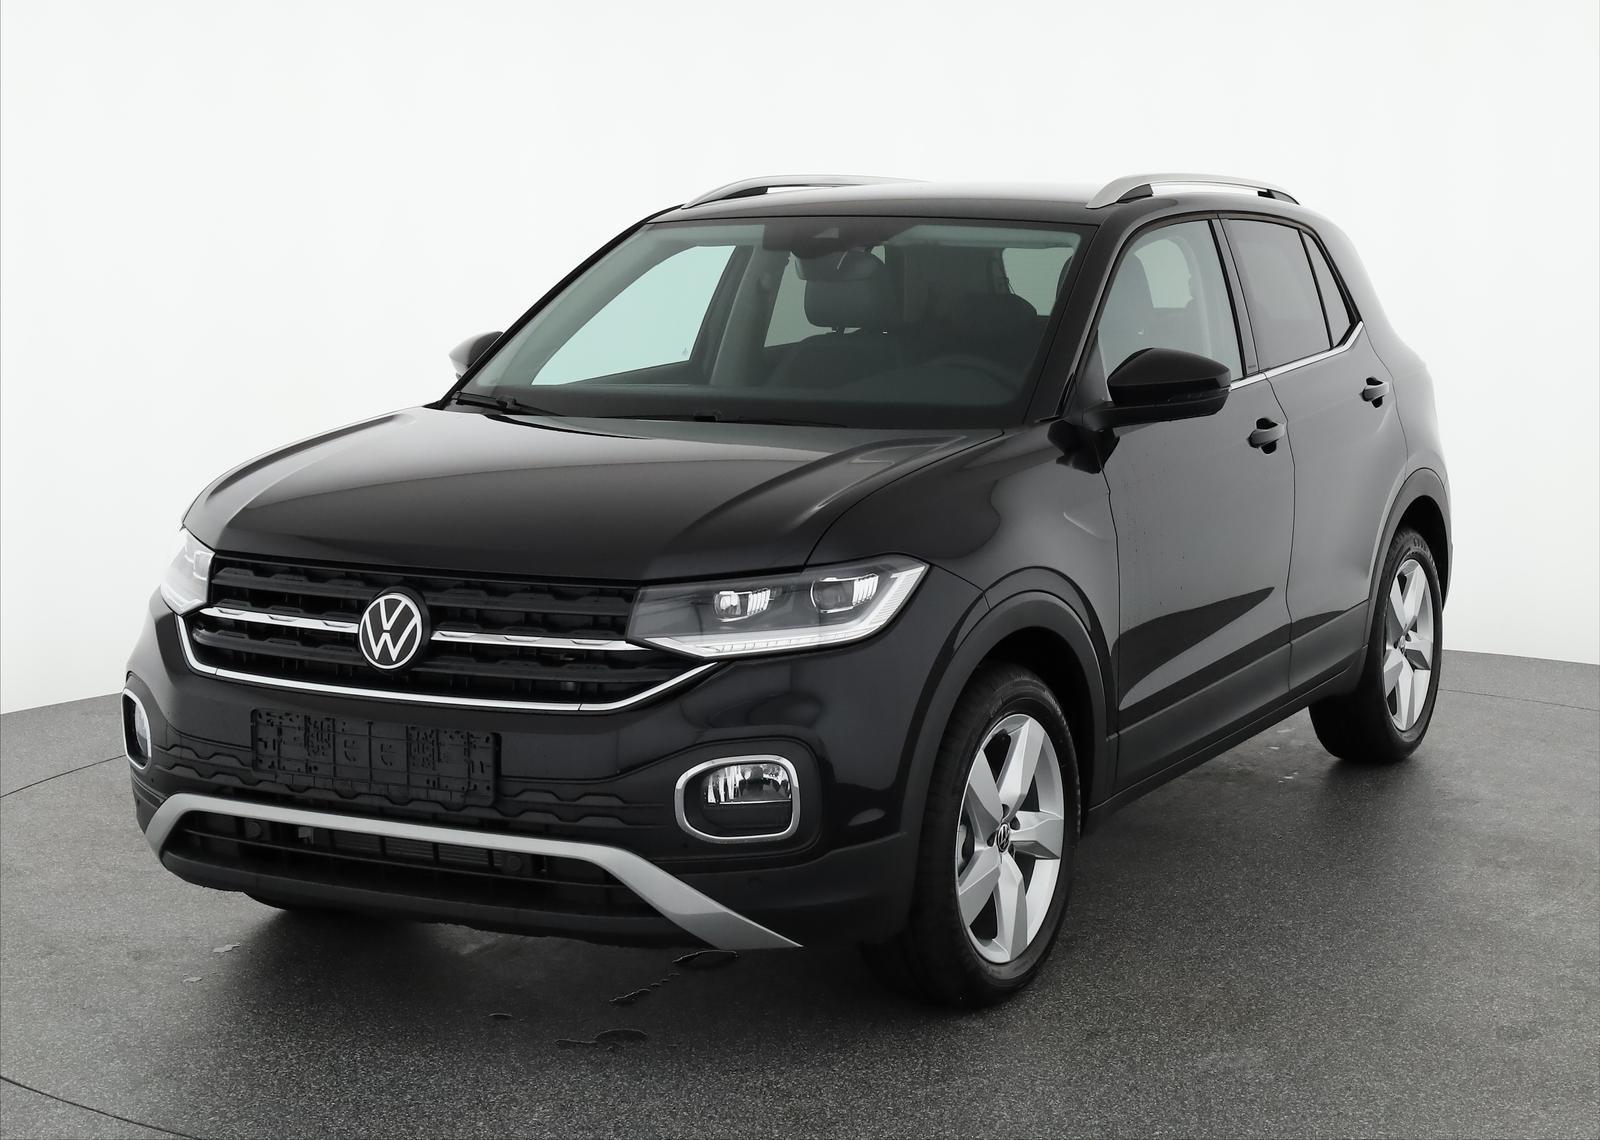 Volkswagen T-Cross Style 1.0 TSI Style, Navi, ACC, Kamera, 4-J Garantie   Fahrzeugangebot zu europäischen Bestpreisen mit Rabatt, günstiger kaufen